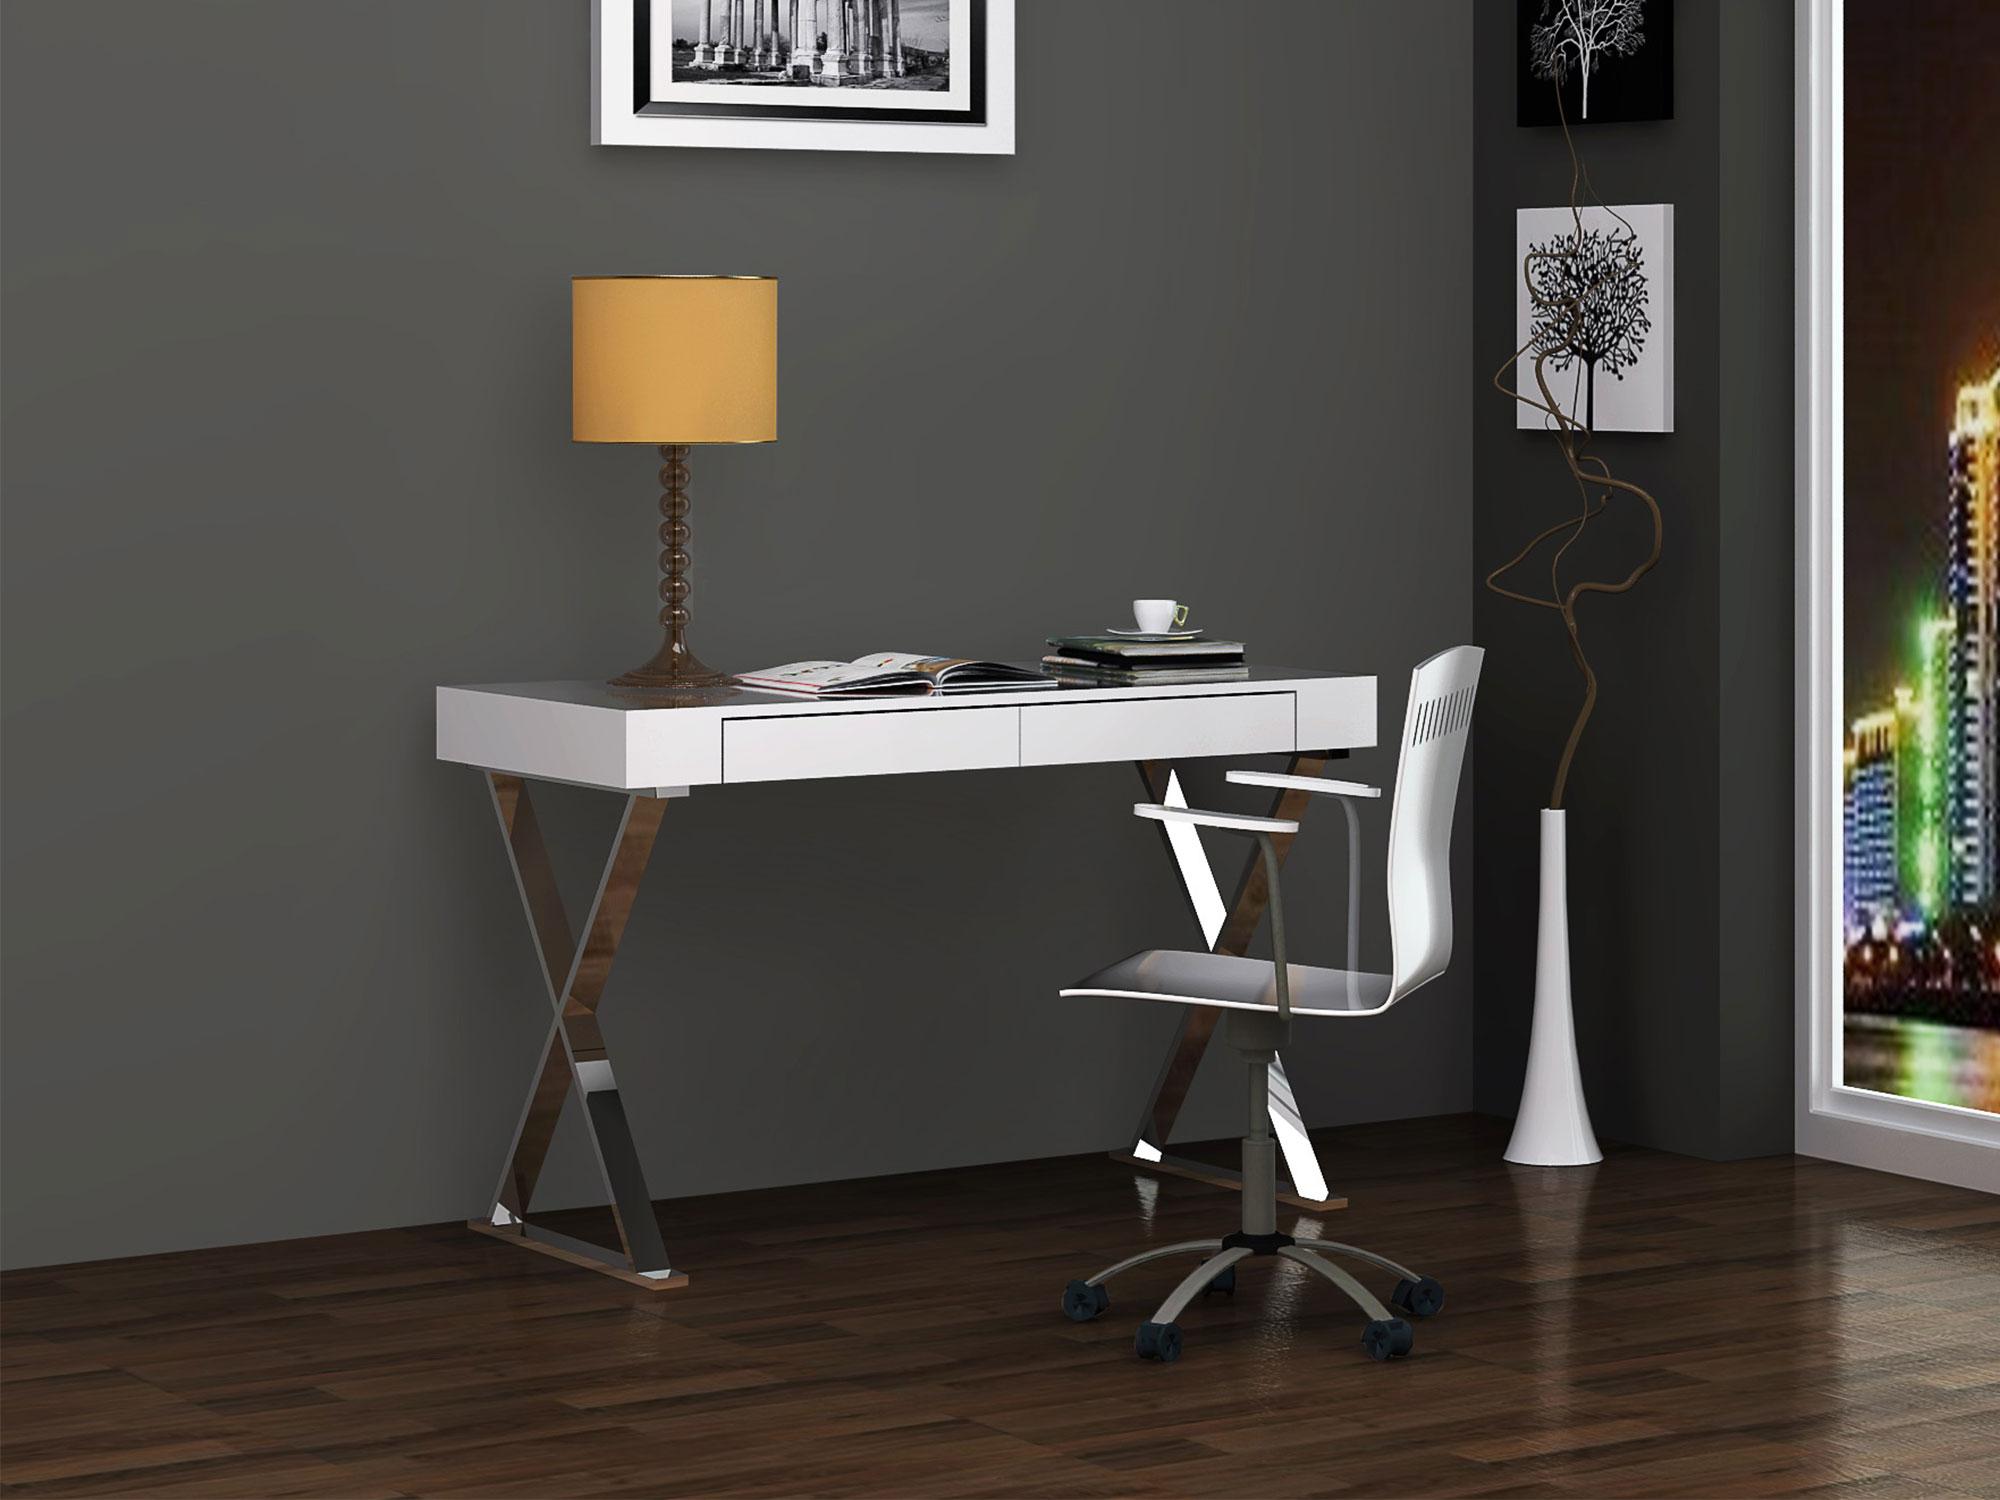 

    
WhiteLine DK1205L-WHT Elm Desk White DK1205L-WHT
